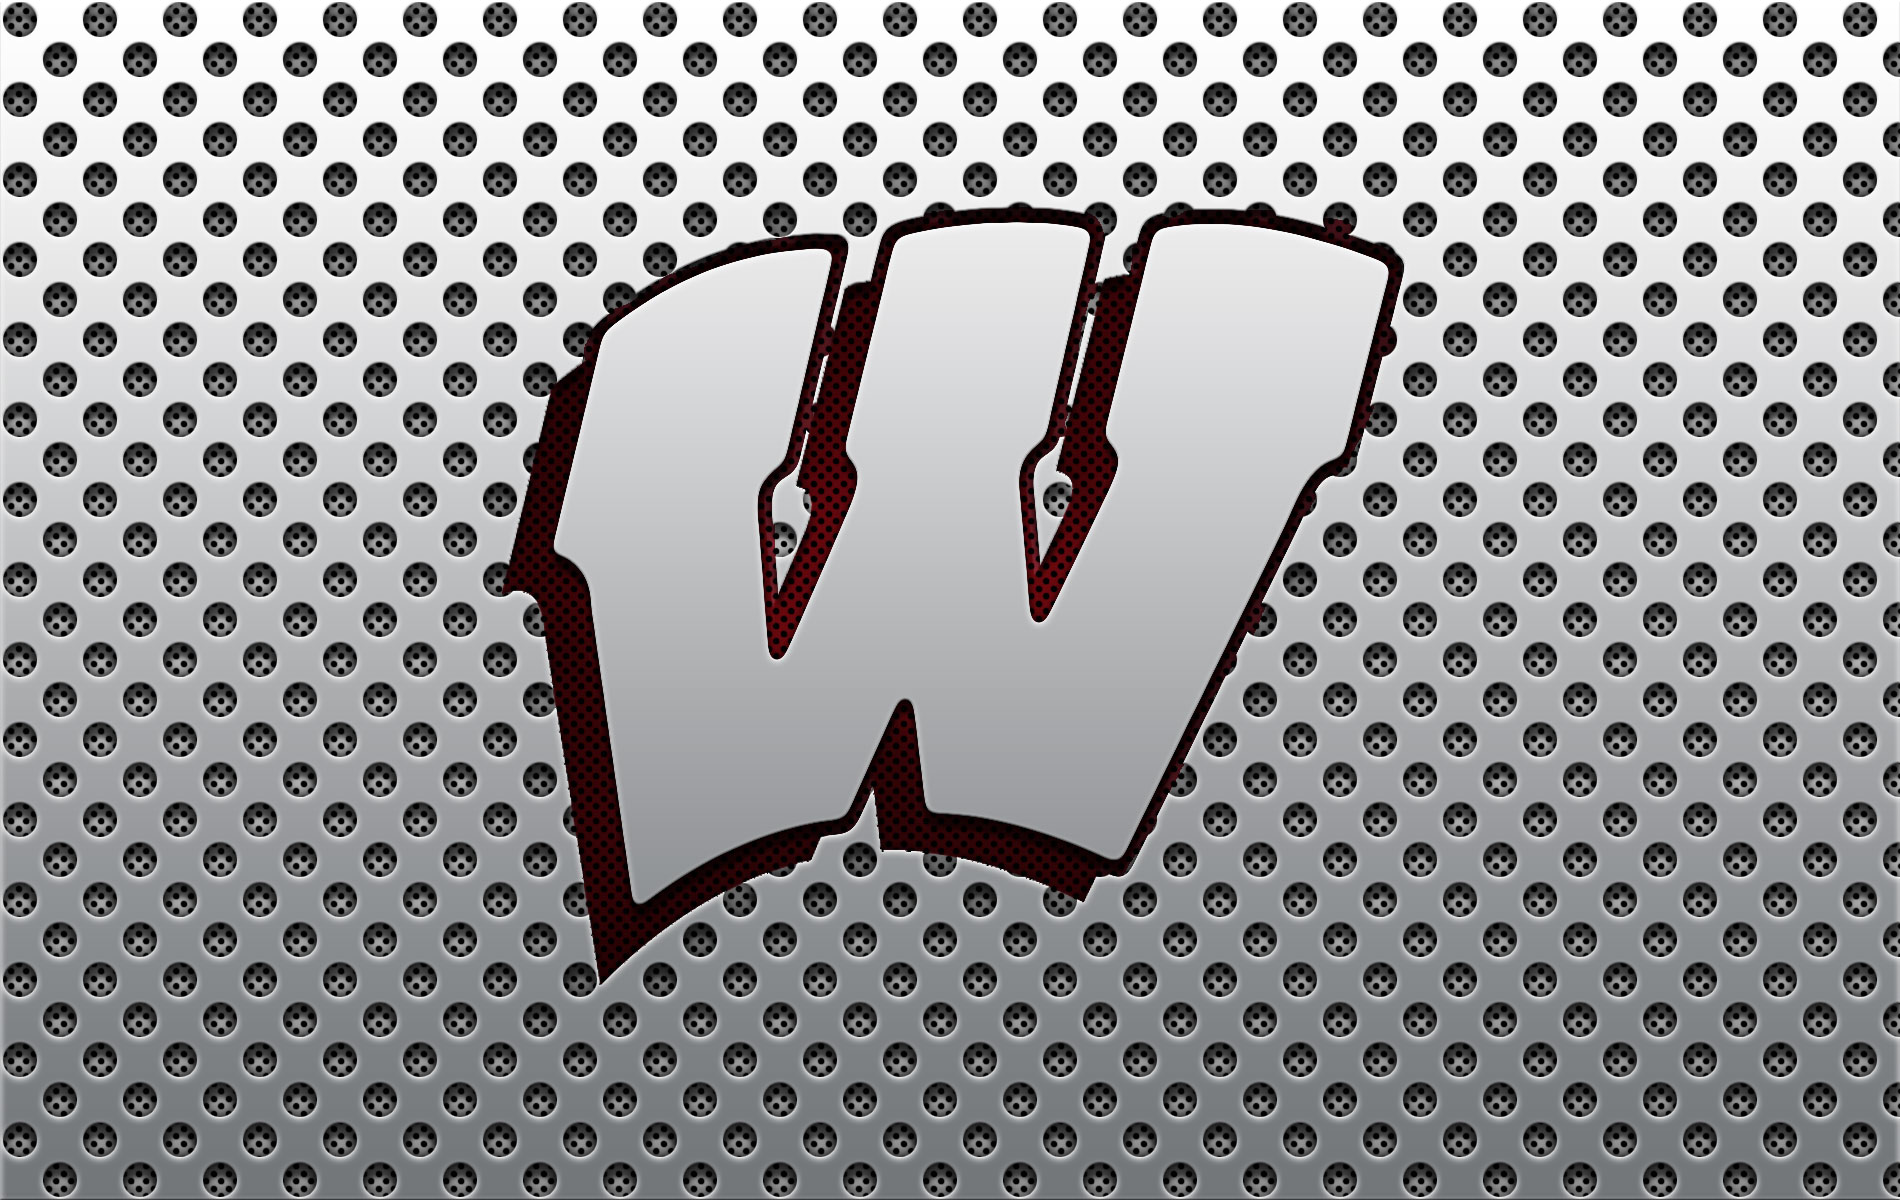 Wisconsin Badgers Logo Wallpaper